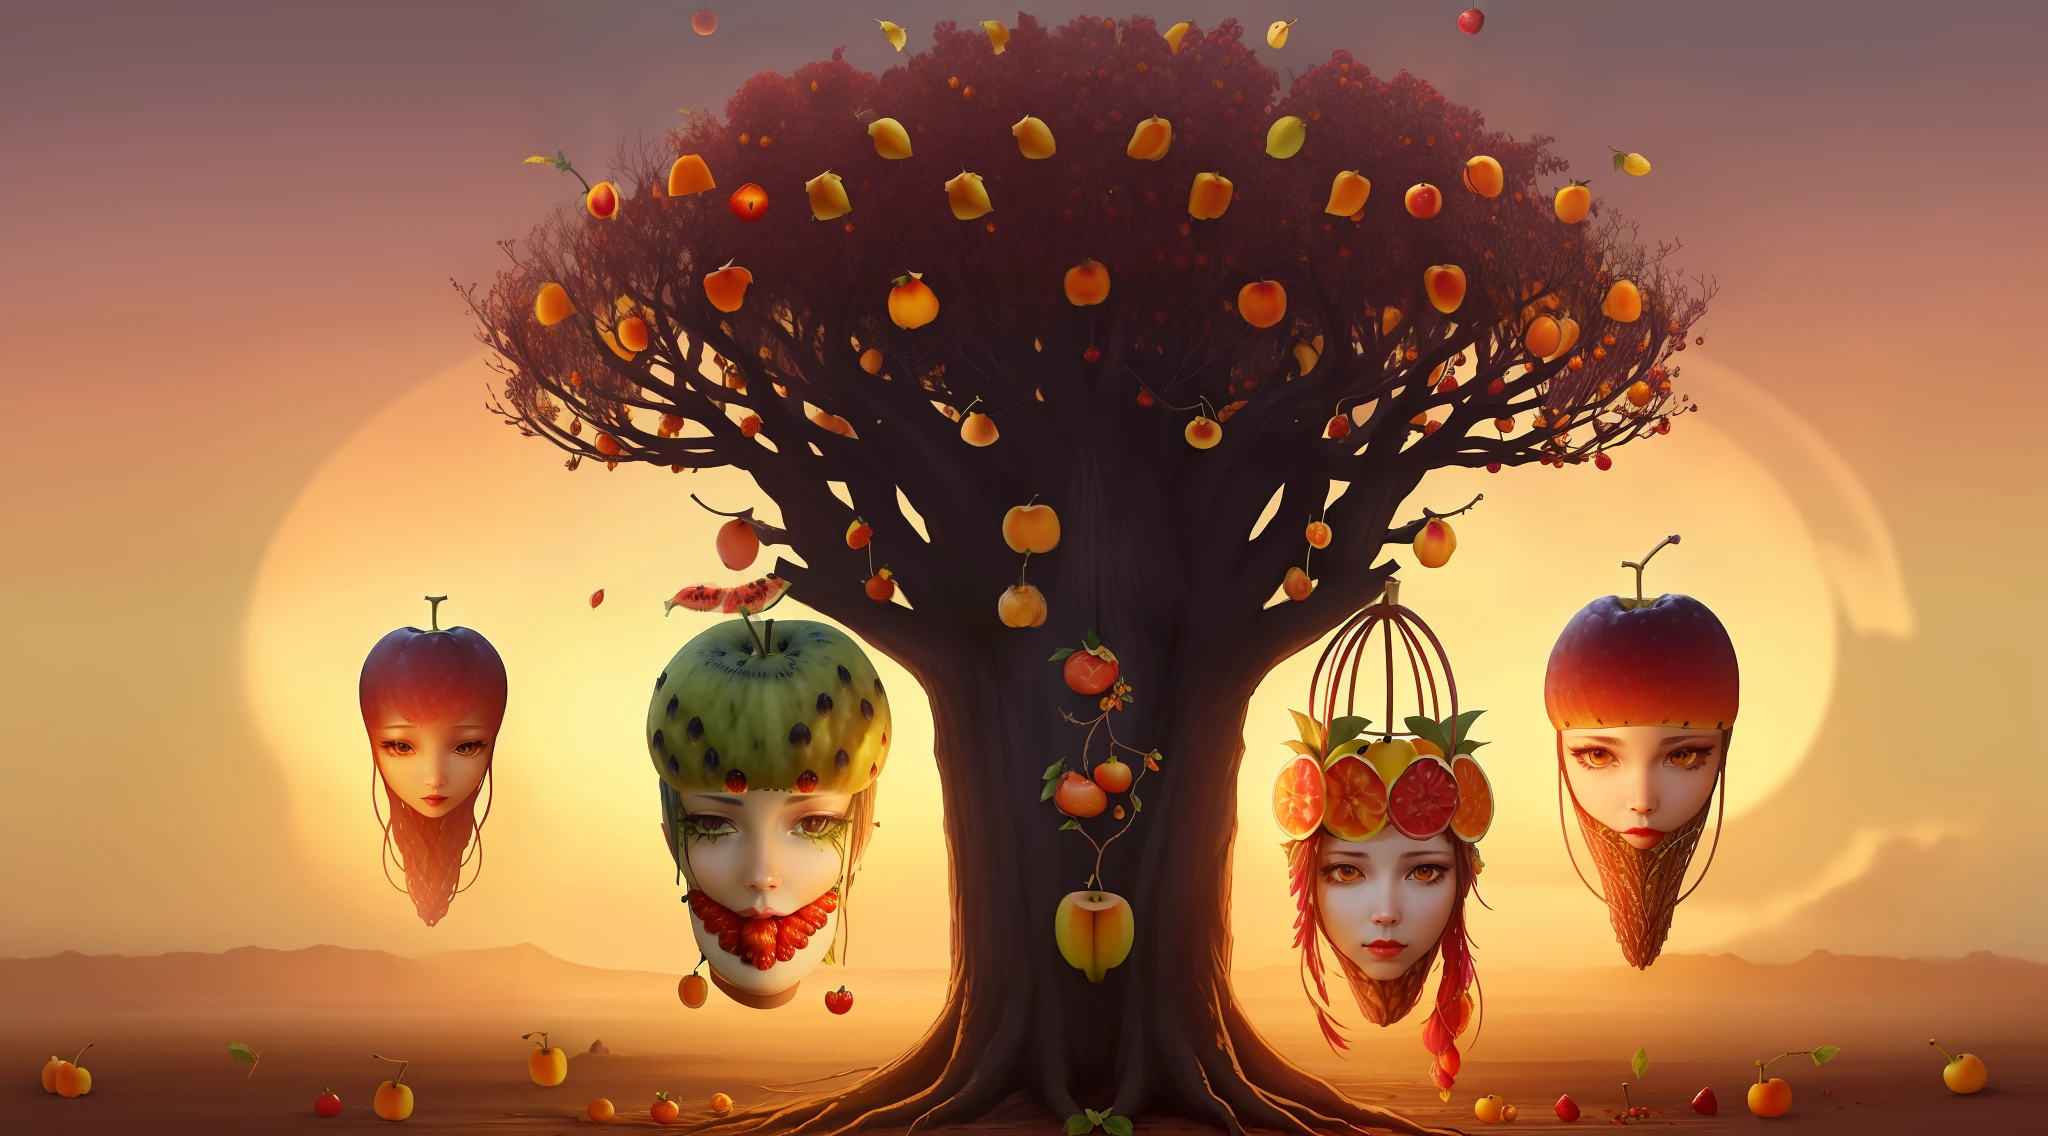 あらゆる種類の人間の果実と果実の頭でいっぱいの不気味な木1本 , ダークファンタジー, (((((果物を頭に置き換える))))) 地獄の木